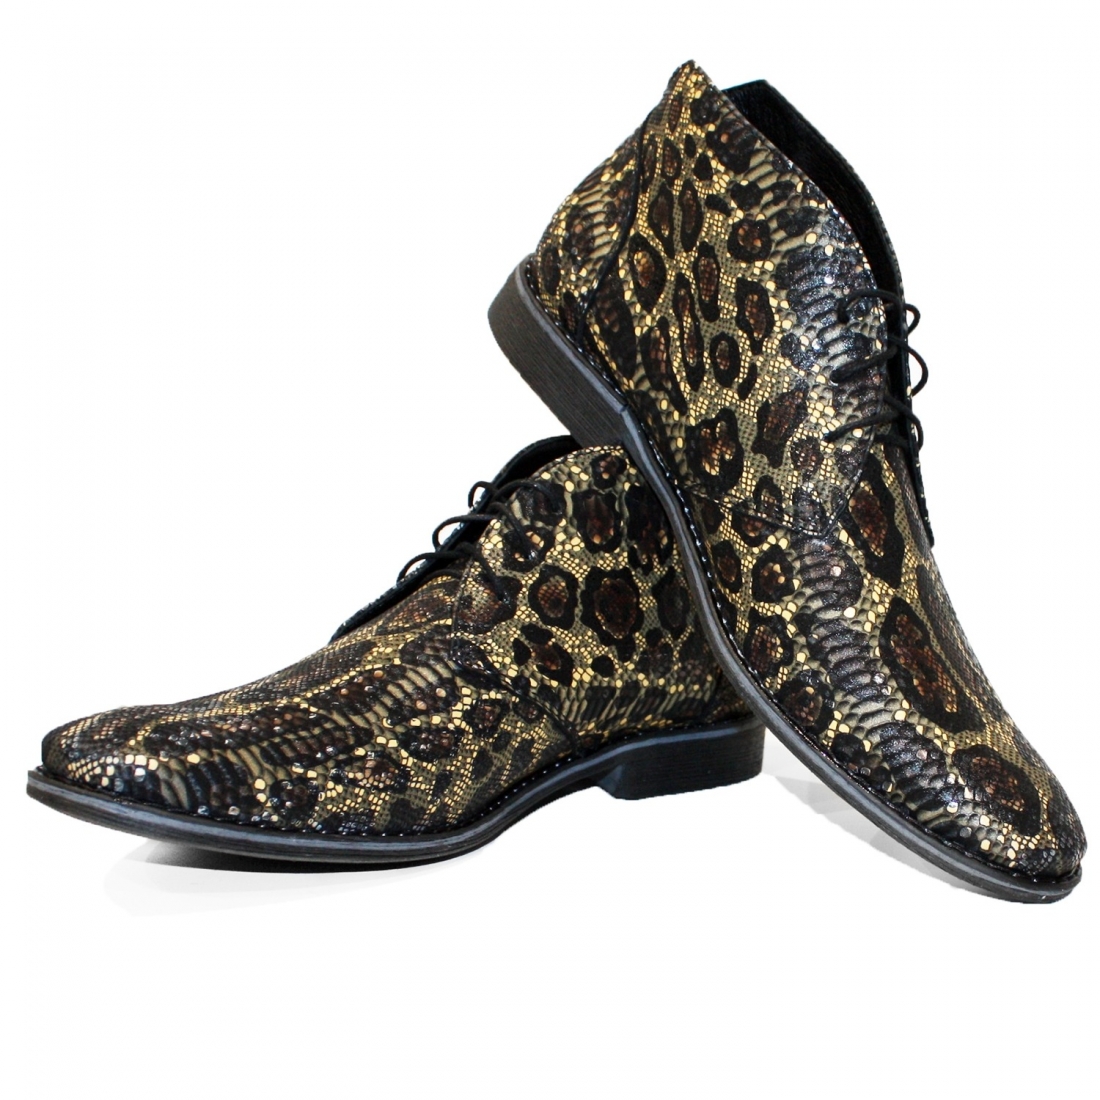 Modello Tarroka - Buty Chukka - Handmade Colorful Italian Leather Shoes